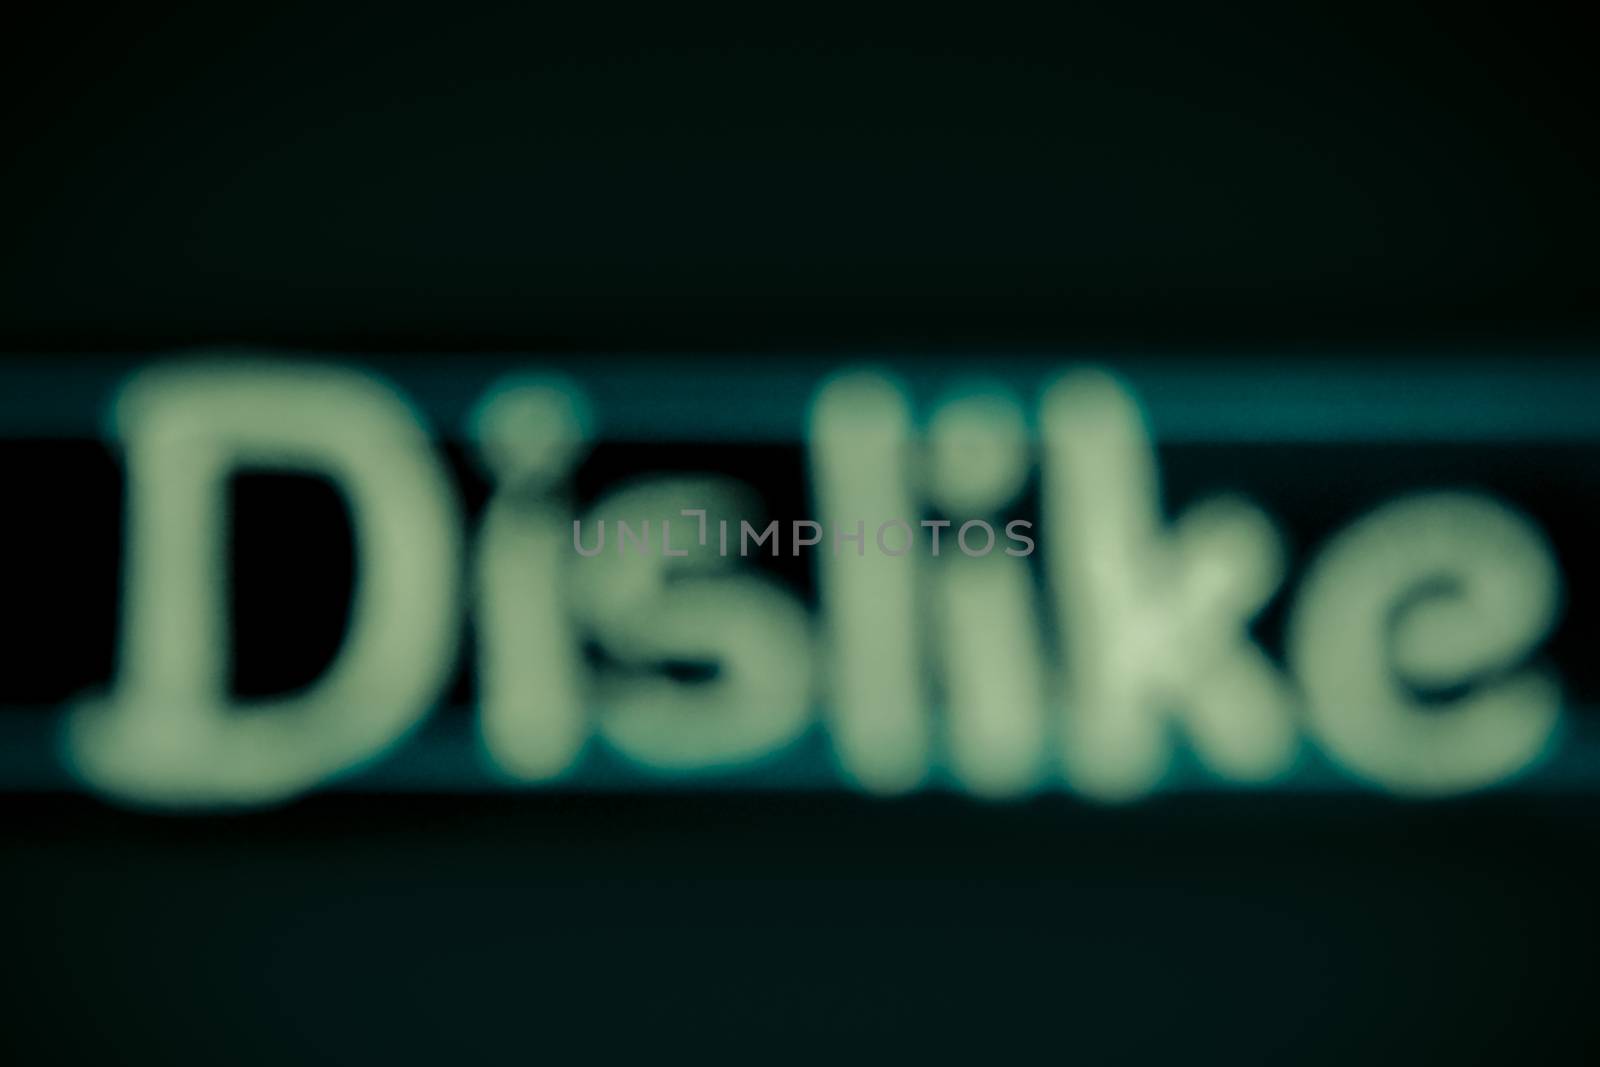 blur image of dislike word handwritten on black chalkboard